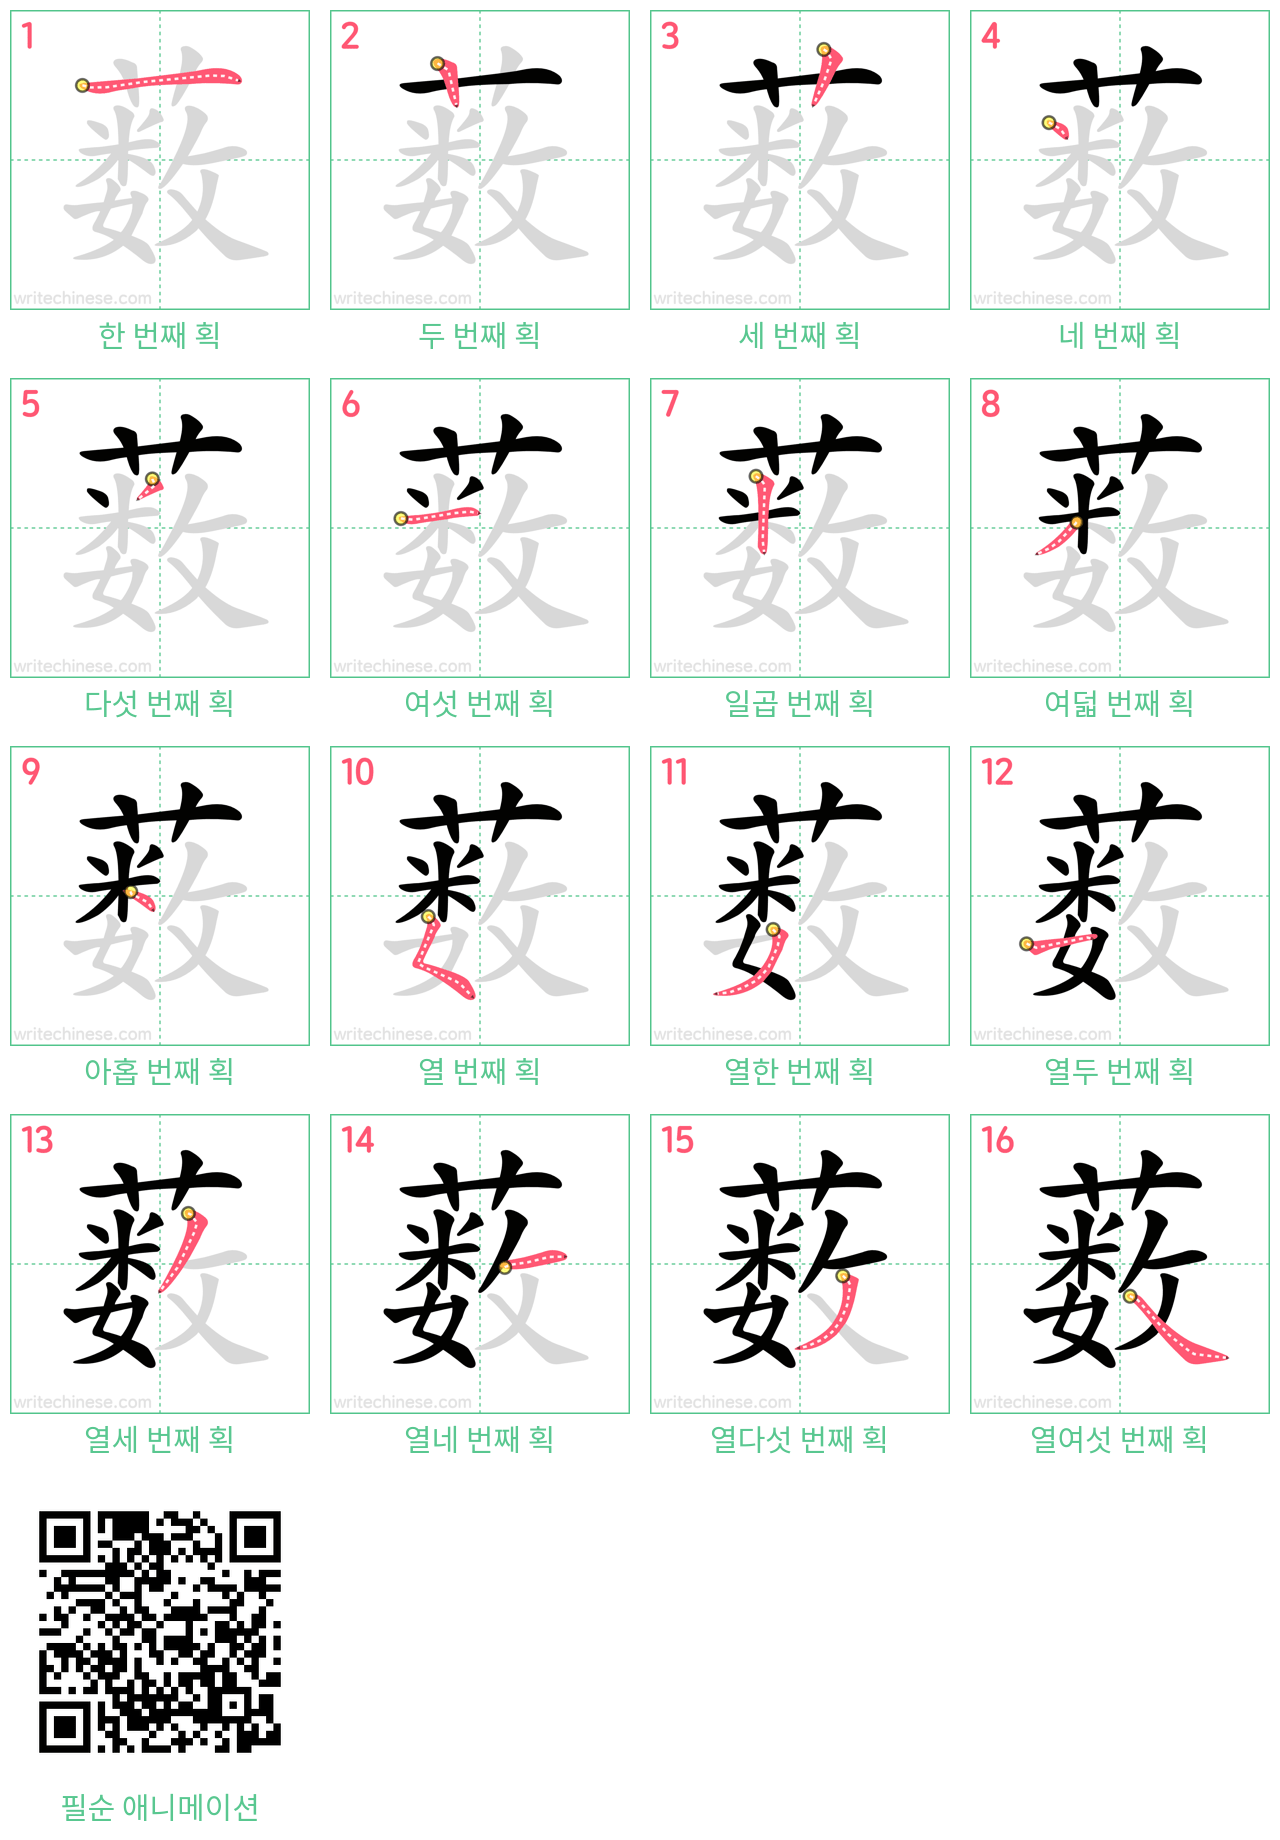 薮 step-by-step stroke order diagrams